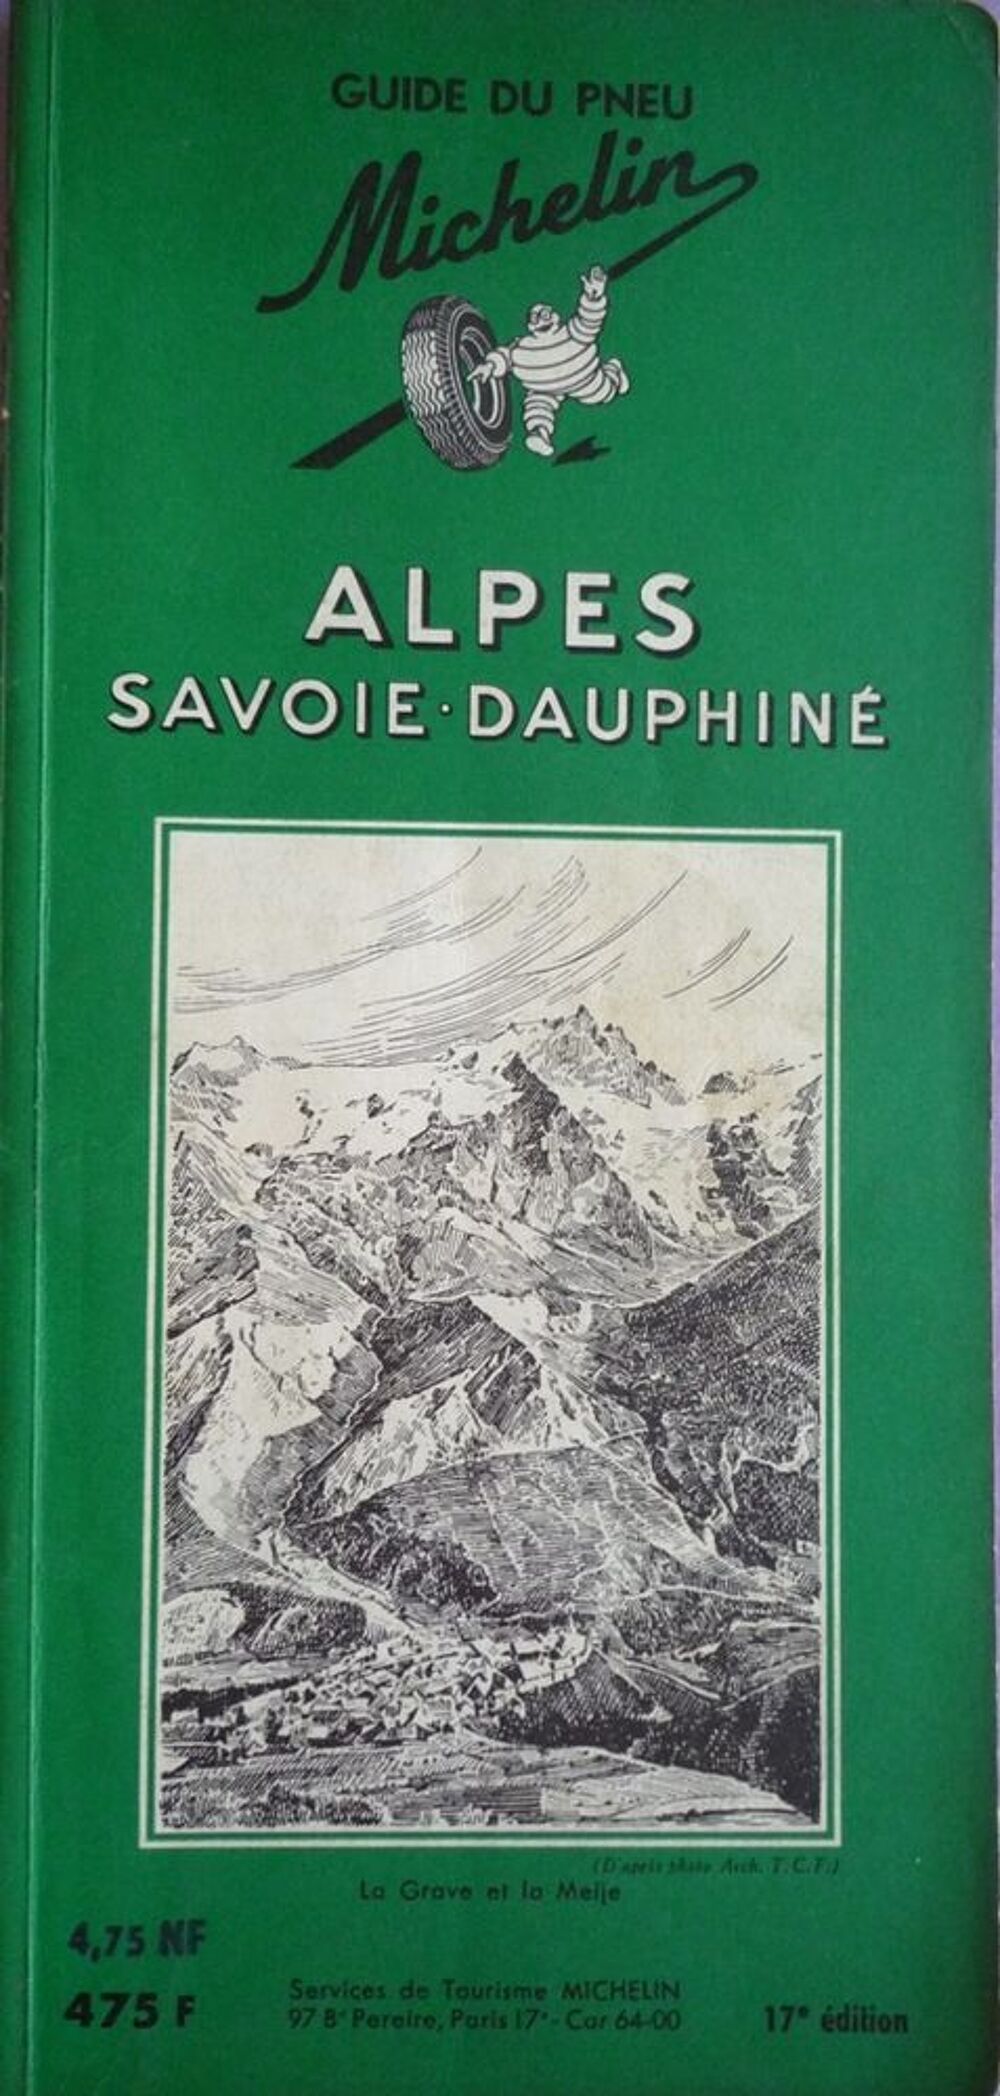 Guide vert MICHELIN ALPES SAVOIE DAUPHINE Livres et BD